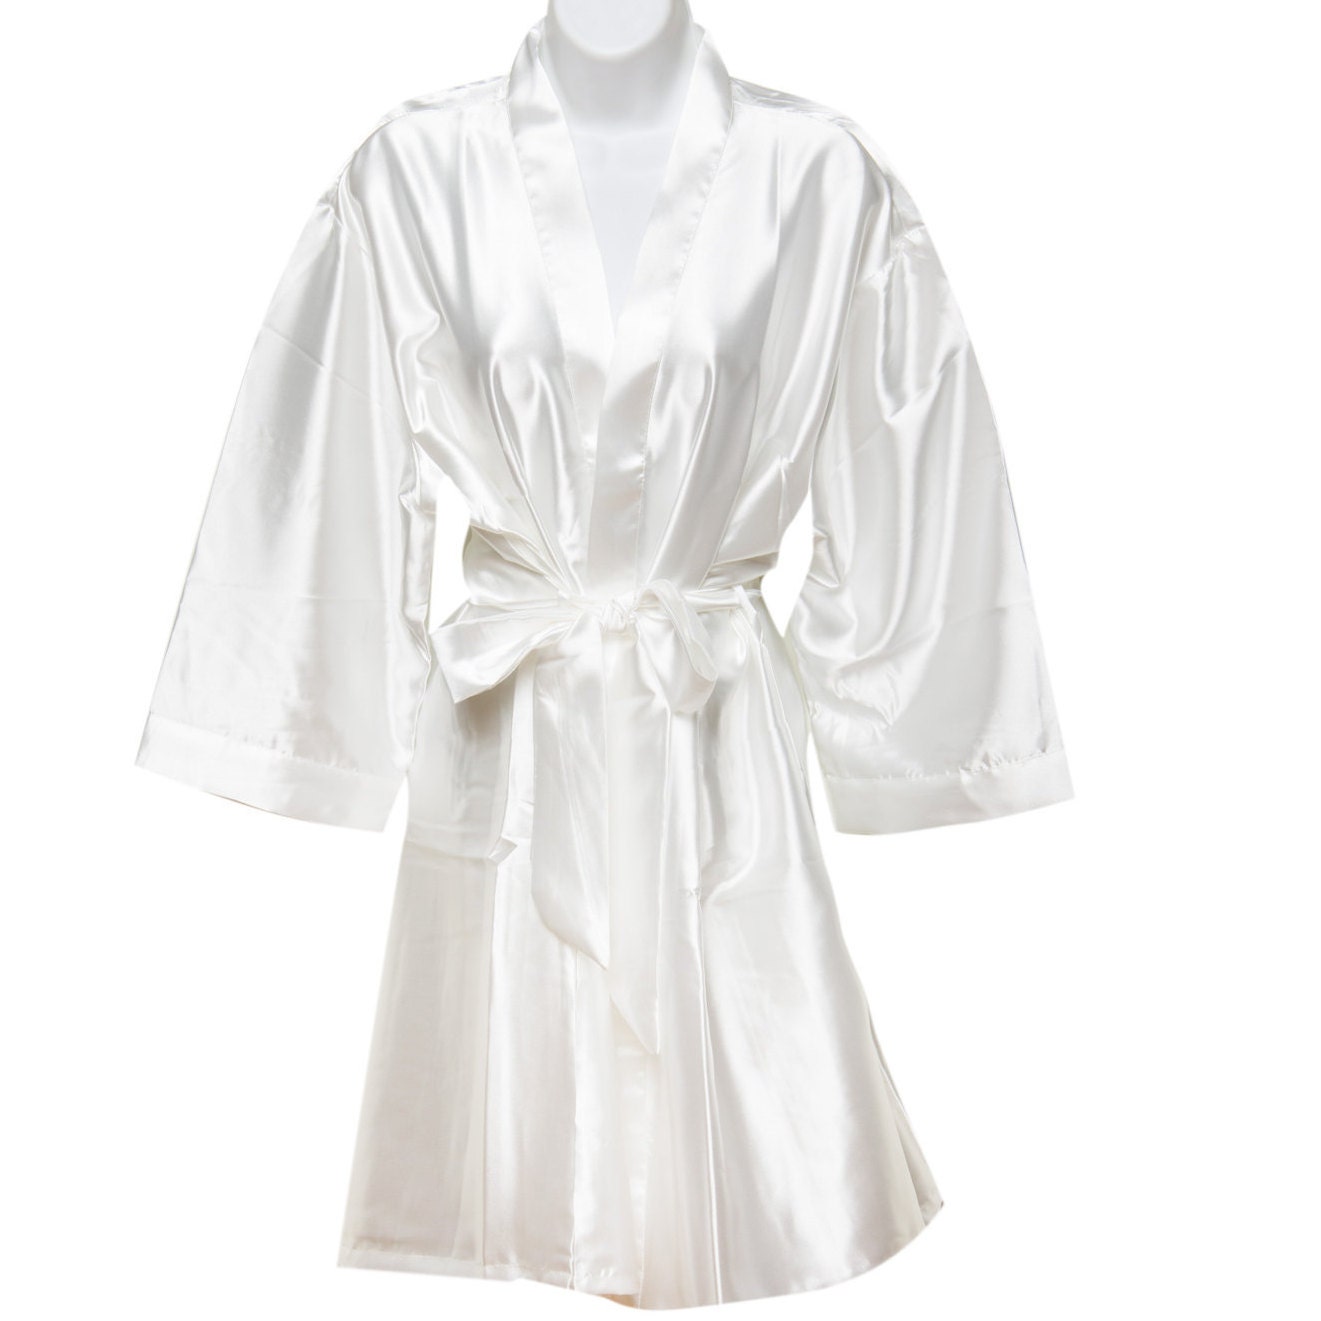 Satin Bridal Robes Bridesmaid Robe Plain Robes Bride | Etsy